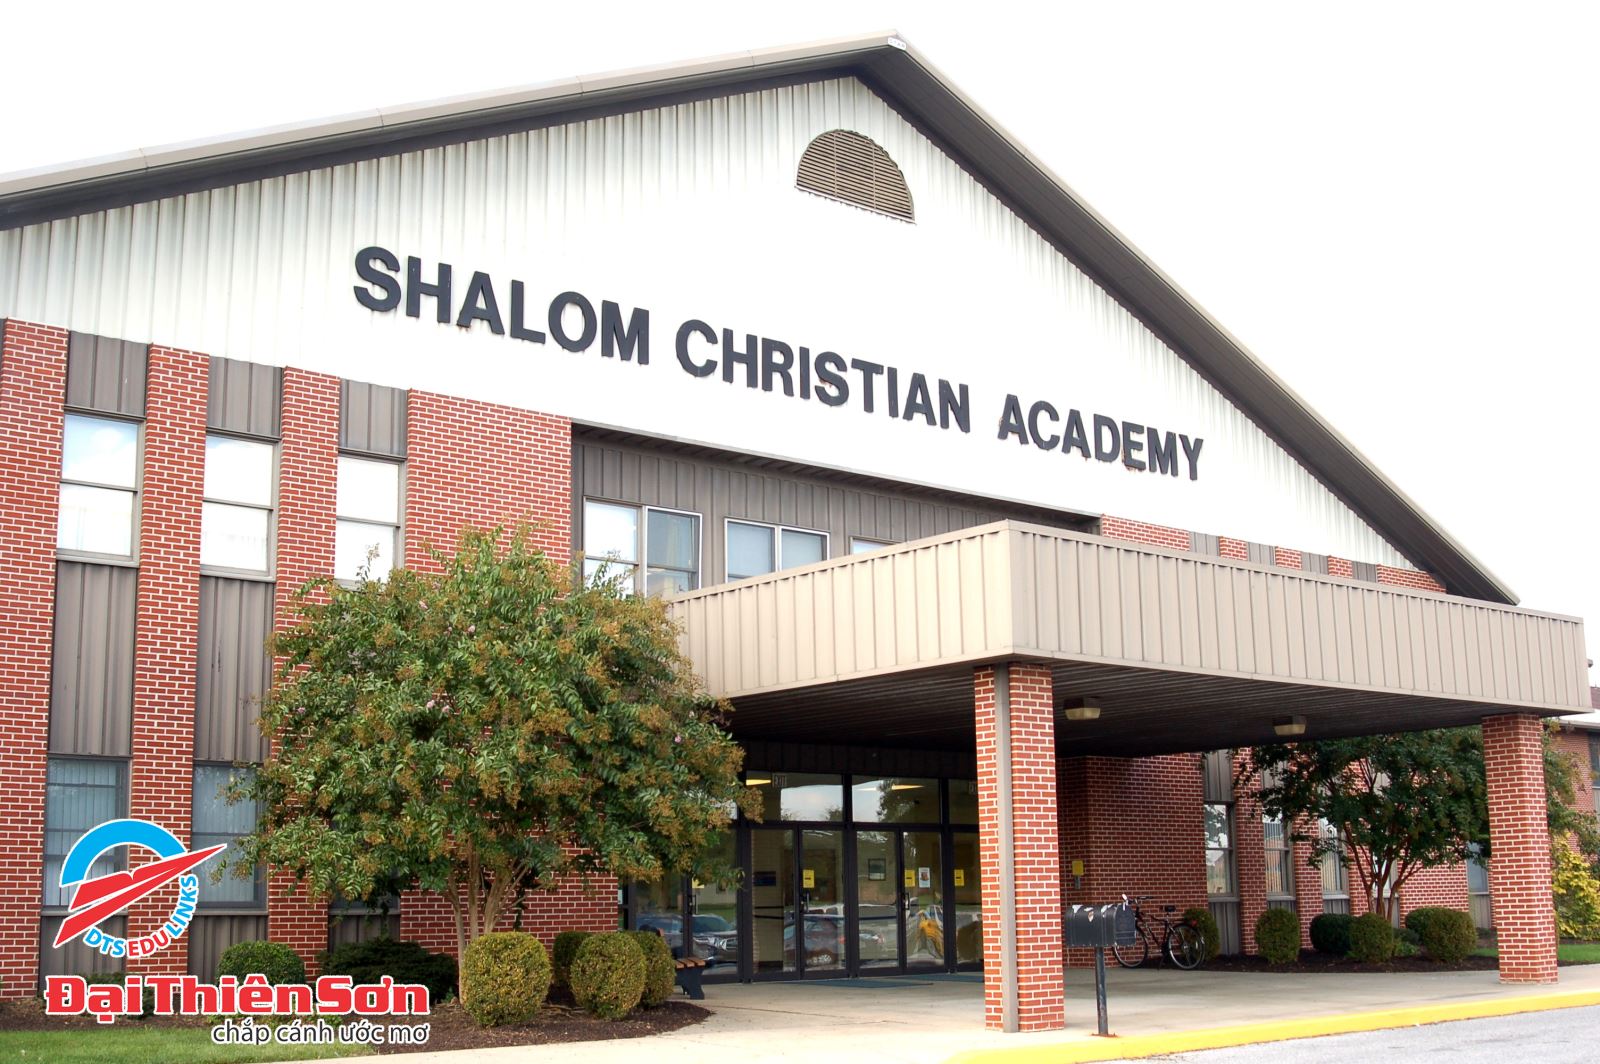 Shalom Christian Academy